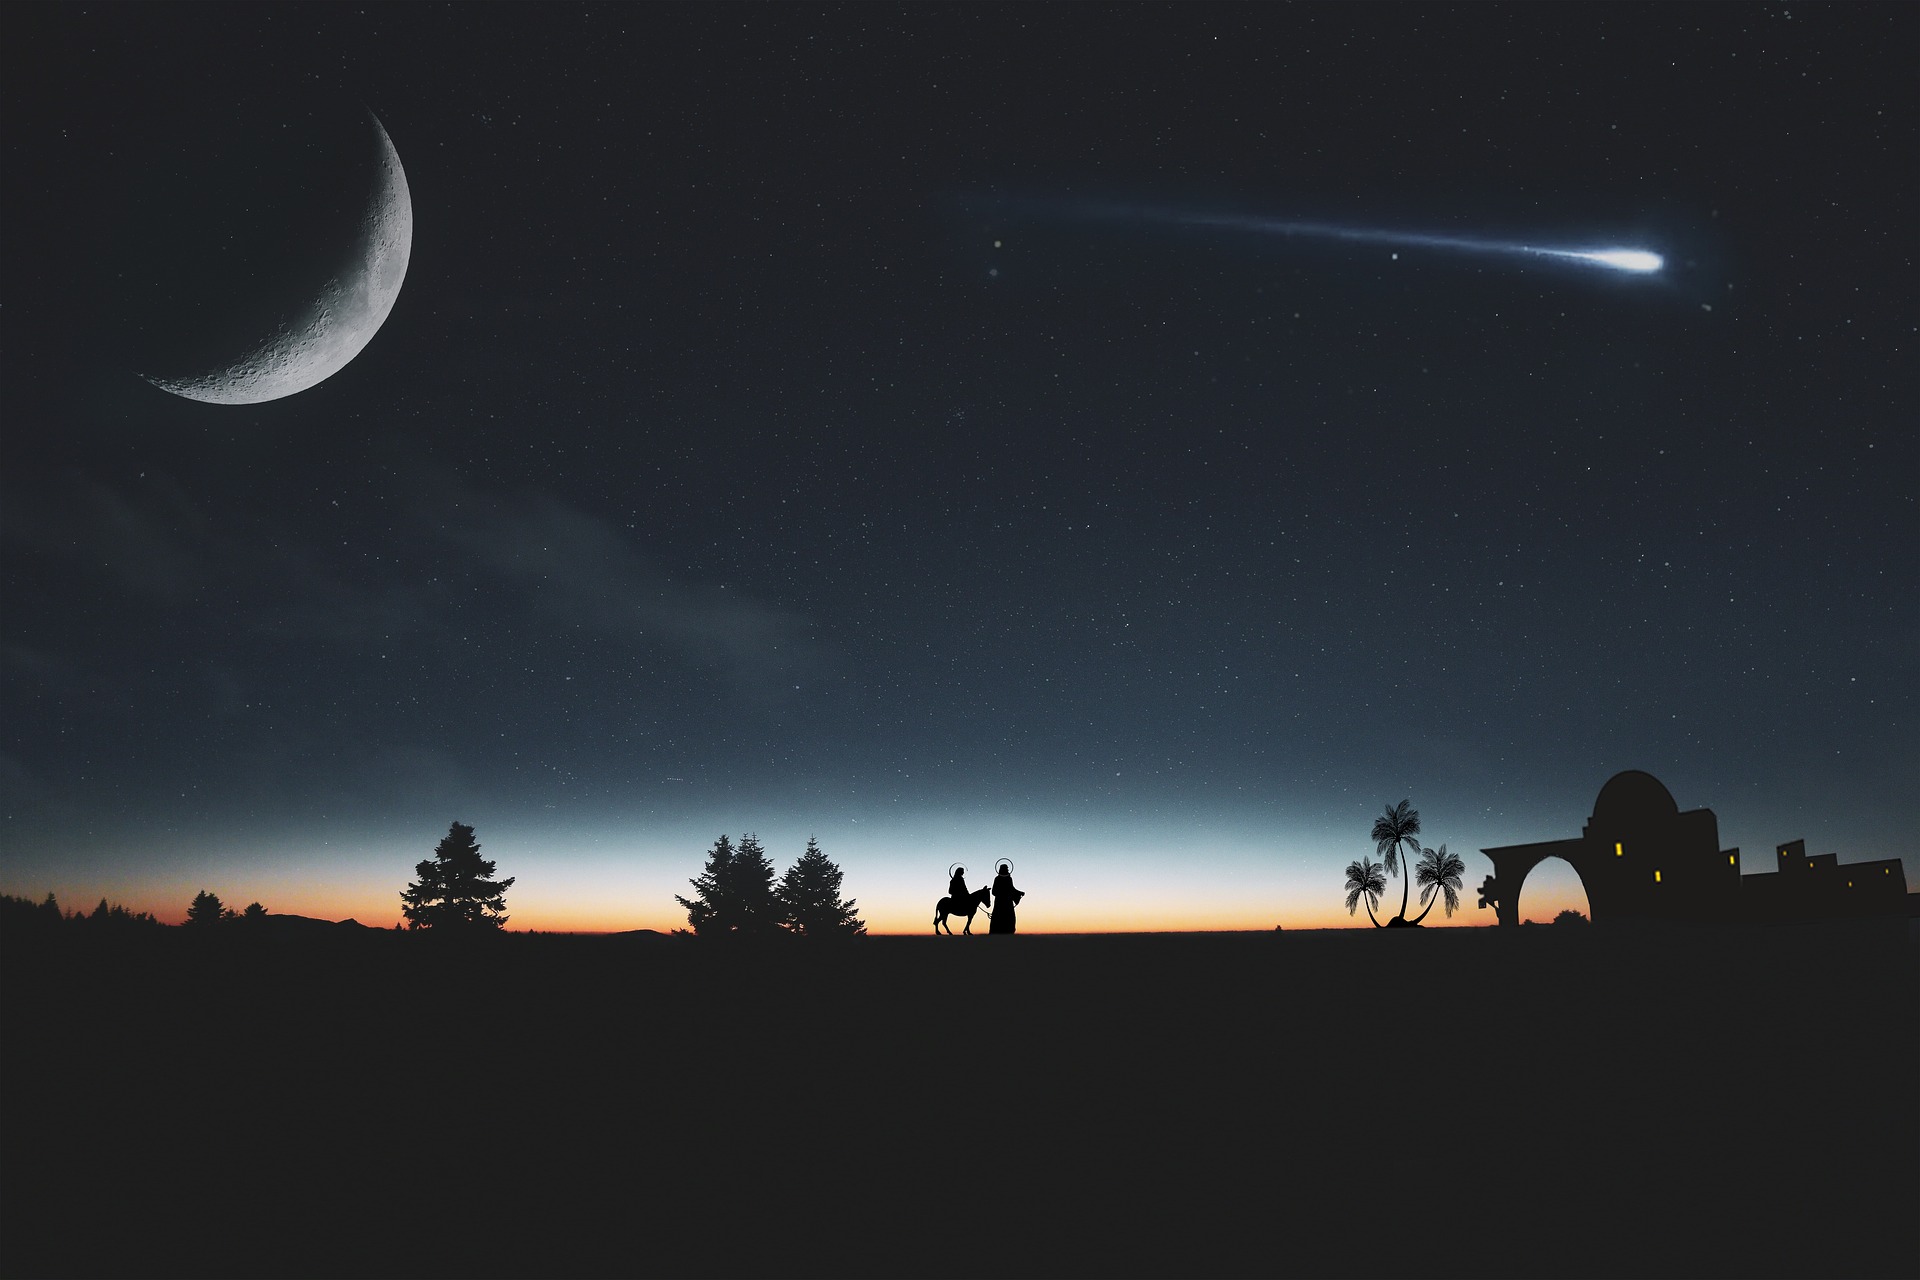 Kometa na nocnym niebie, źródło: Pixabay